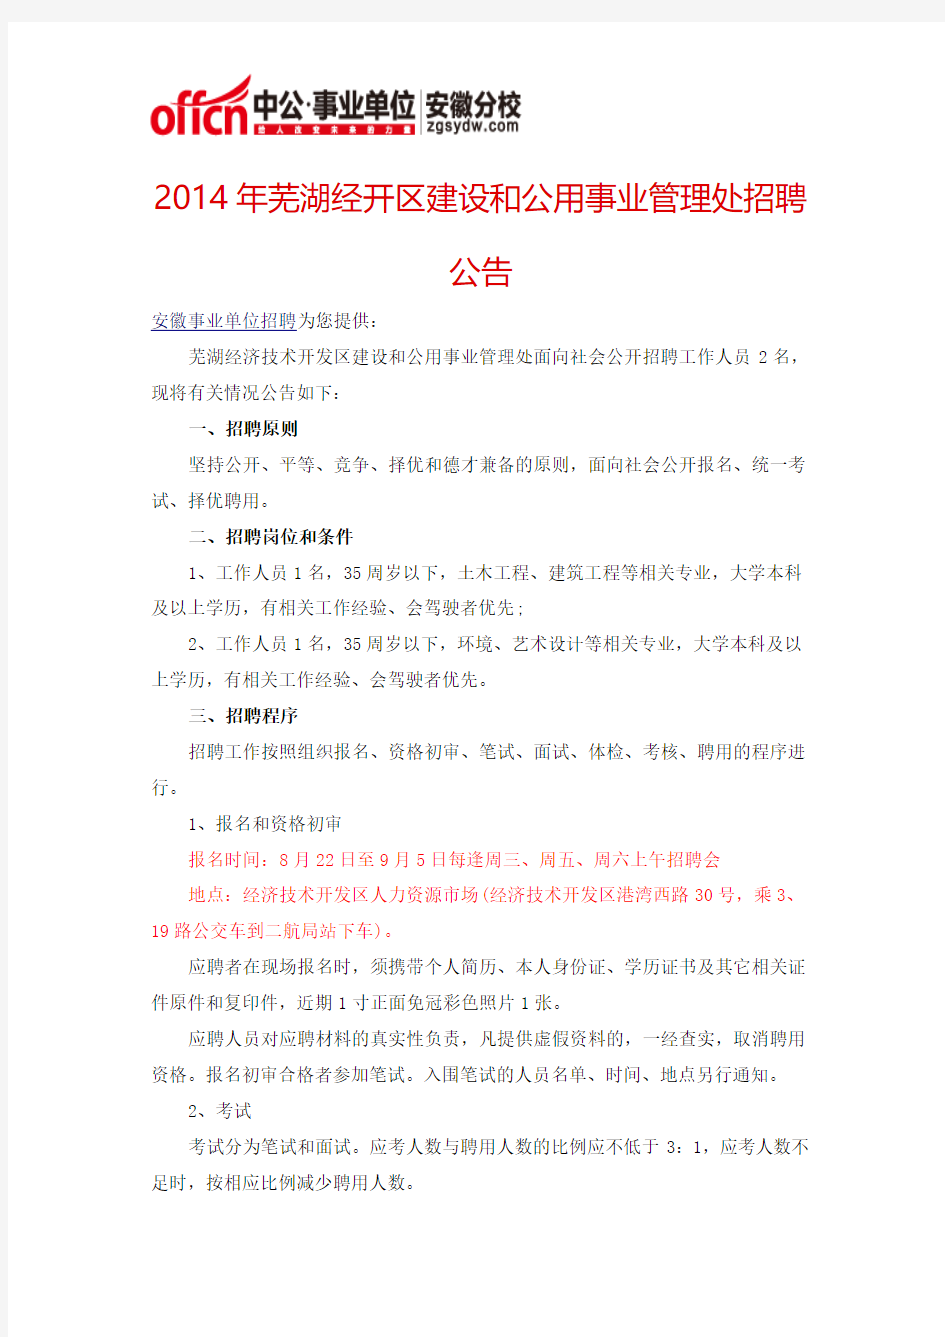 2014年芜湖经开区建设和公用事业管理处招聘公告